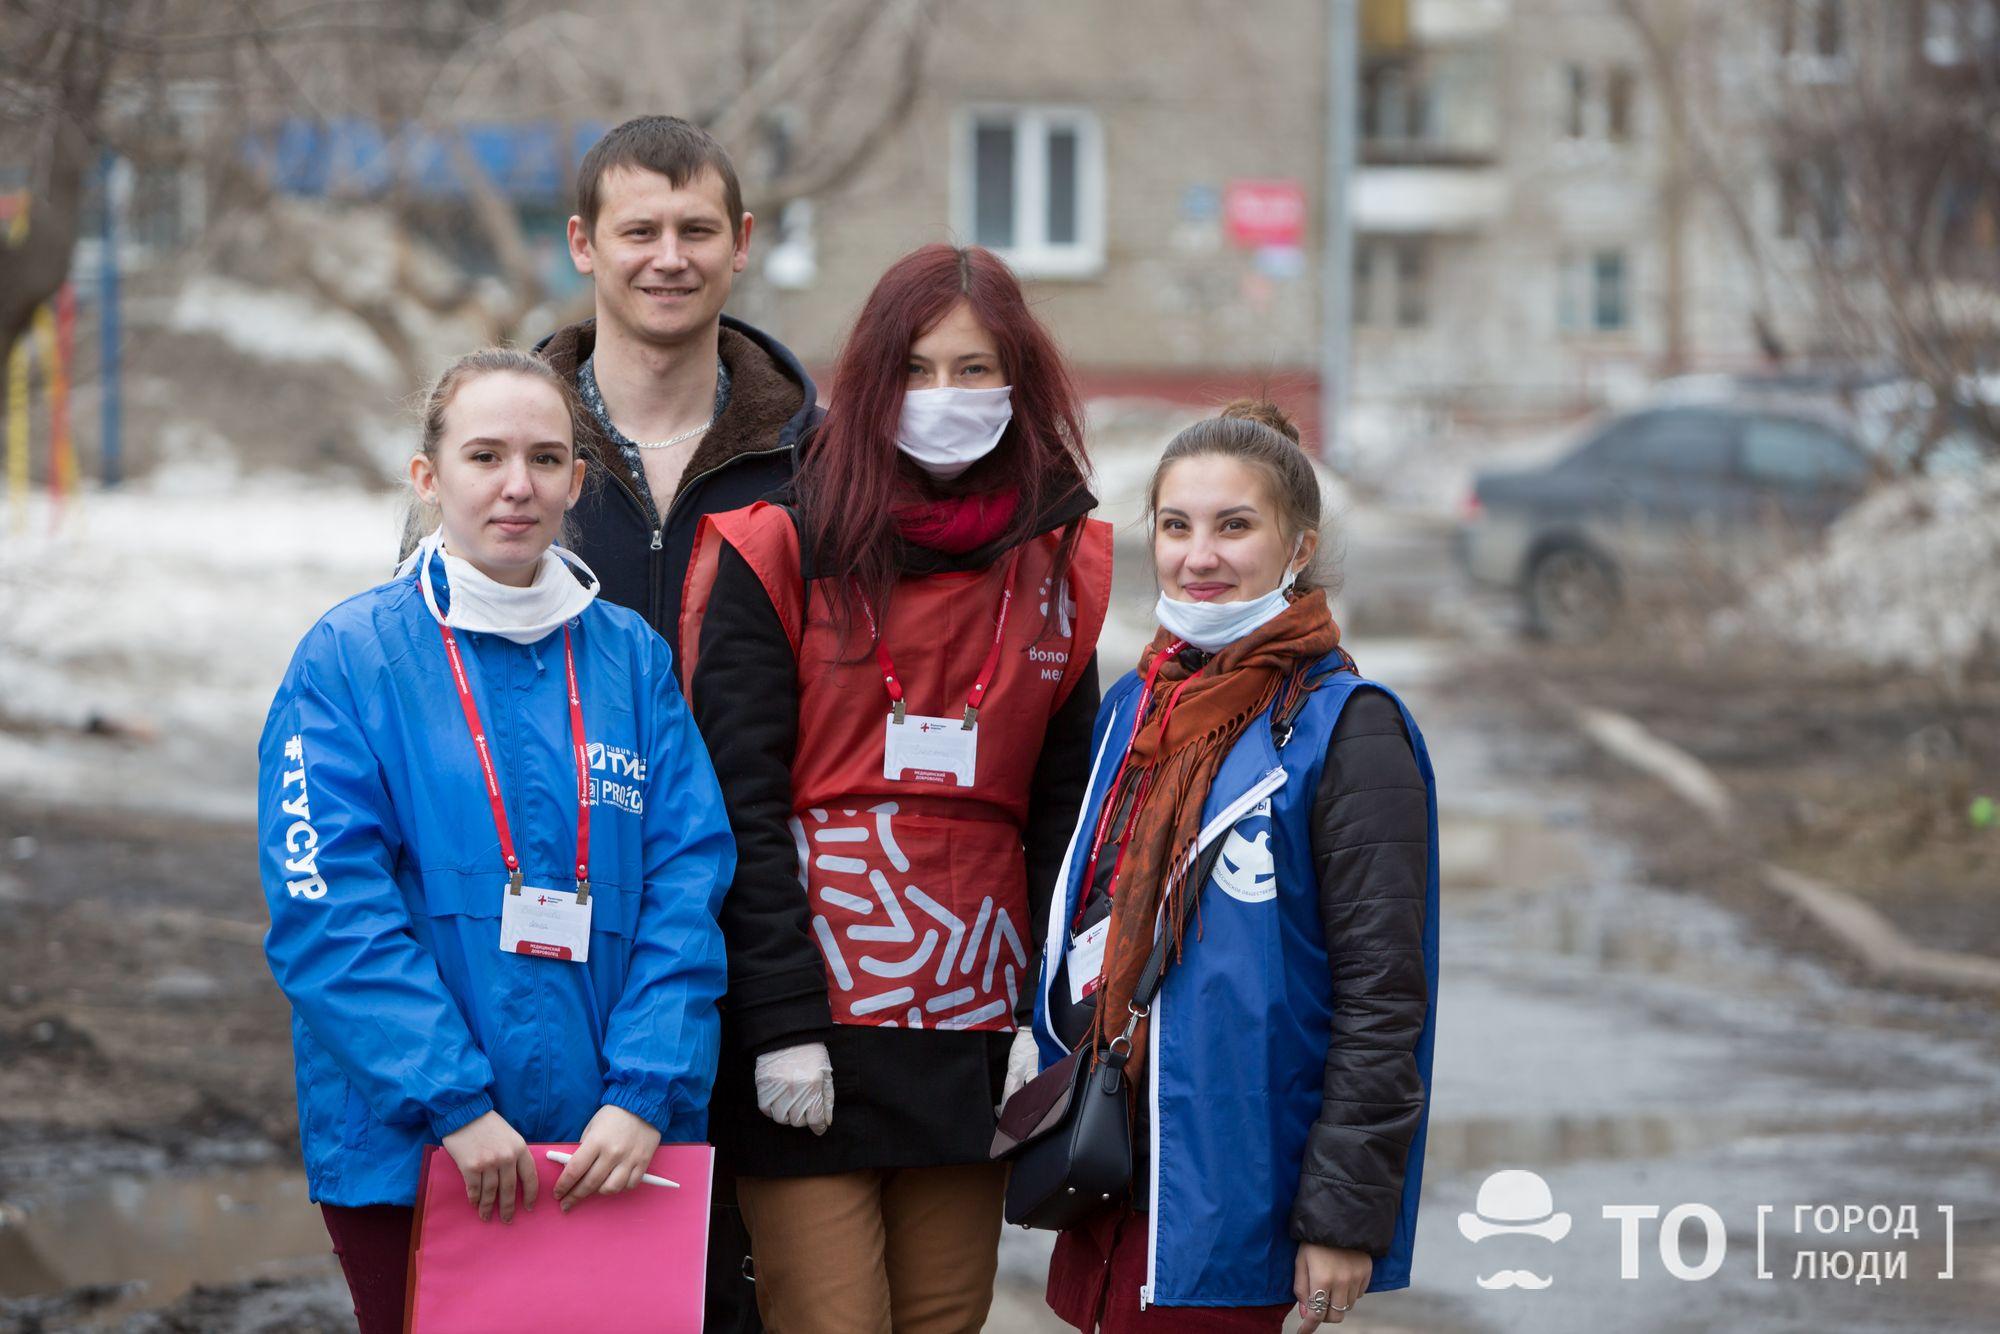 Волонтеры. Подростки волонтеры. Волонтеры помогают. Волонтеры России. Волонтеры помогать готовы